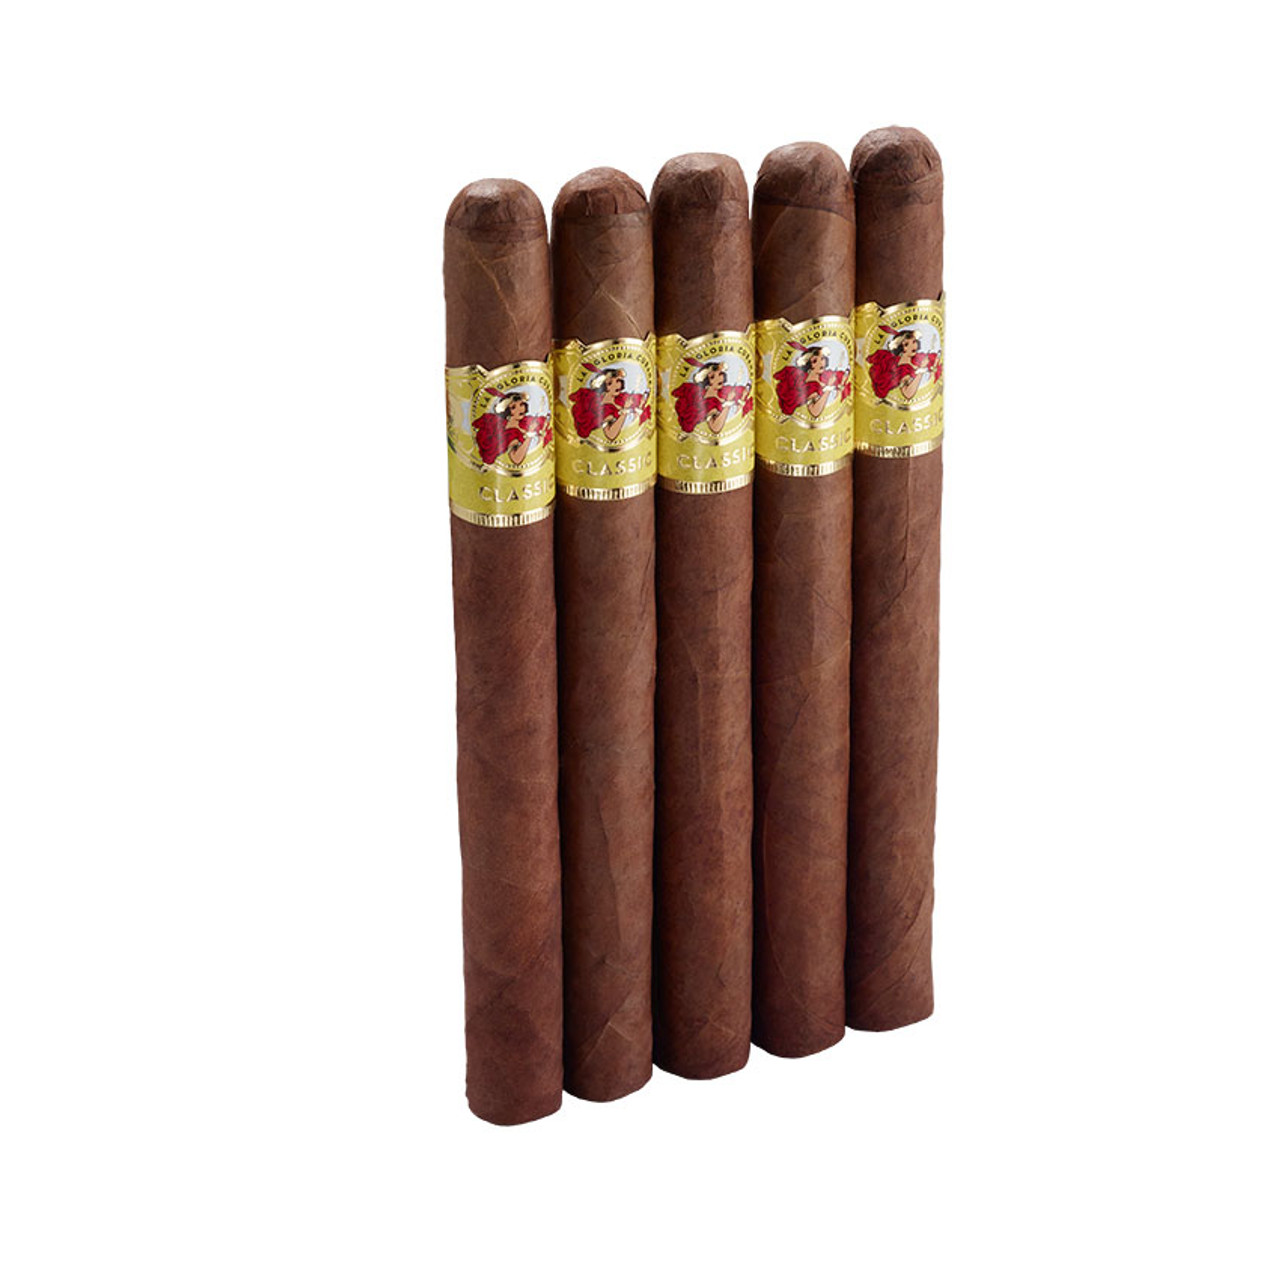 La Gloria Cubana Soberano Cigars - 8 x 52 (Pack of 5) *Box